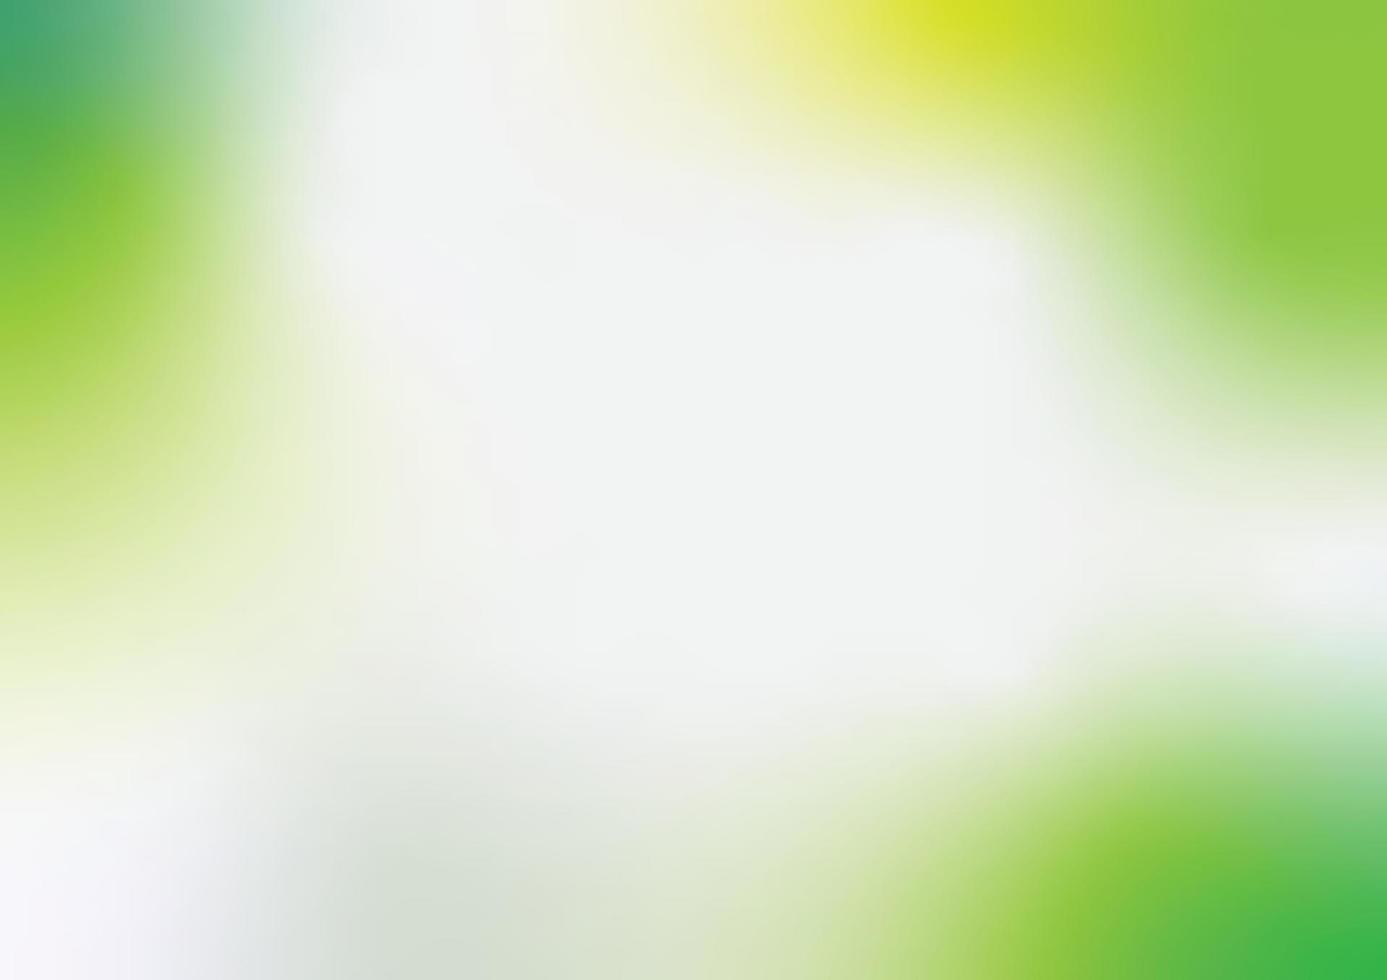 Vektor-Illustration Hintergrund mit Farbverlauf Natur mit hellem Sonnenlicht. abstrakter grüner unscharfer hintergrund. Ökologiekonzept für Ihr Grafikdesign, Banner oder Poster. vektor